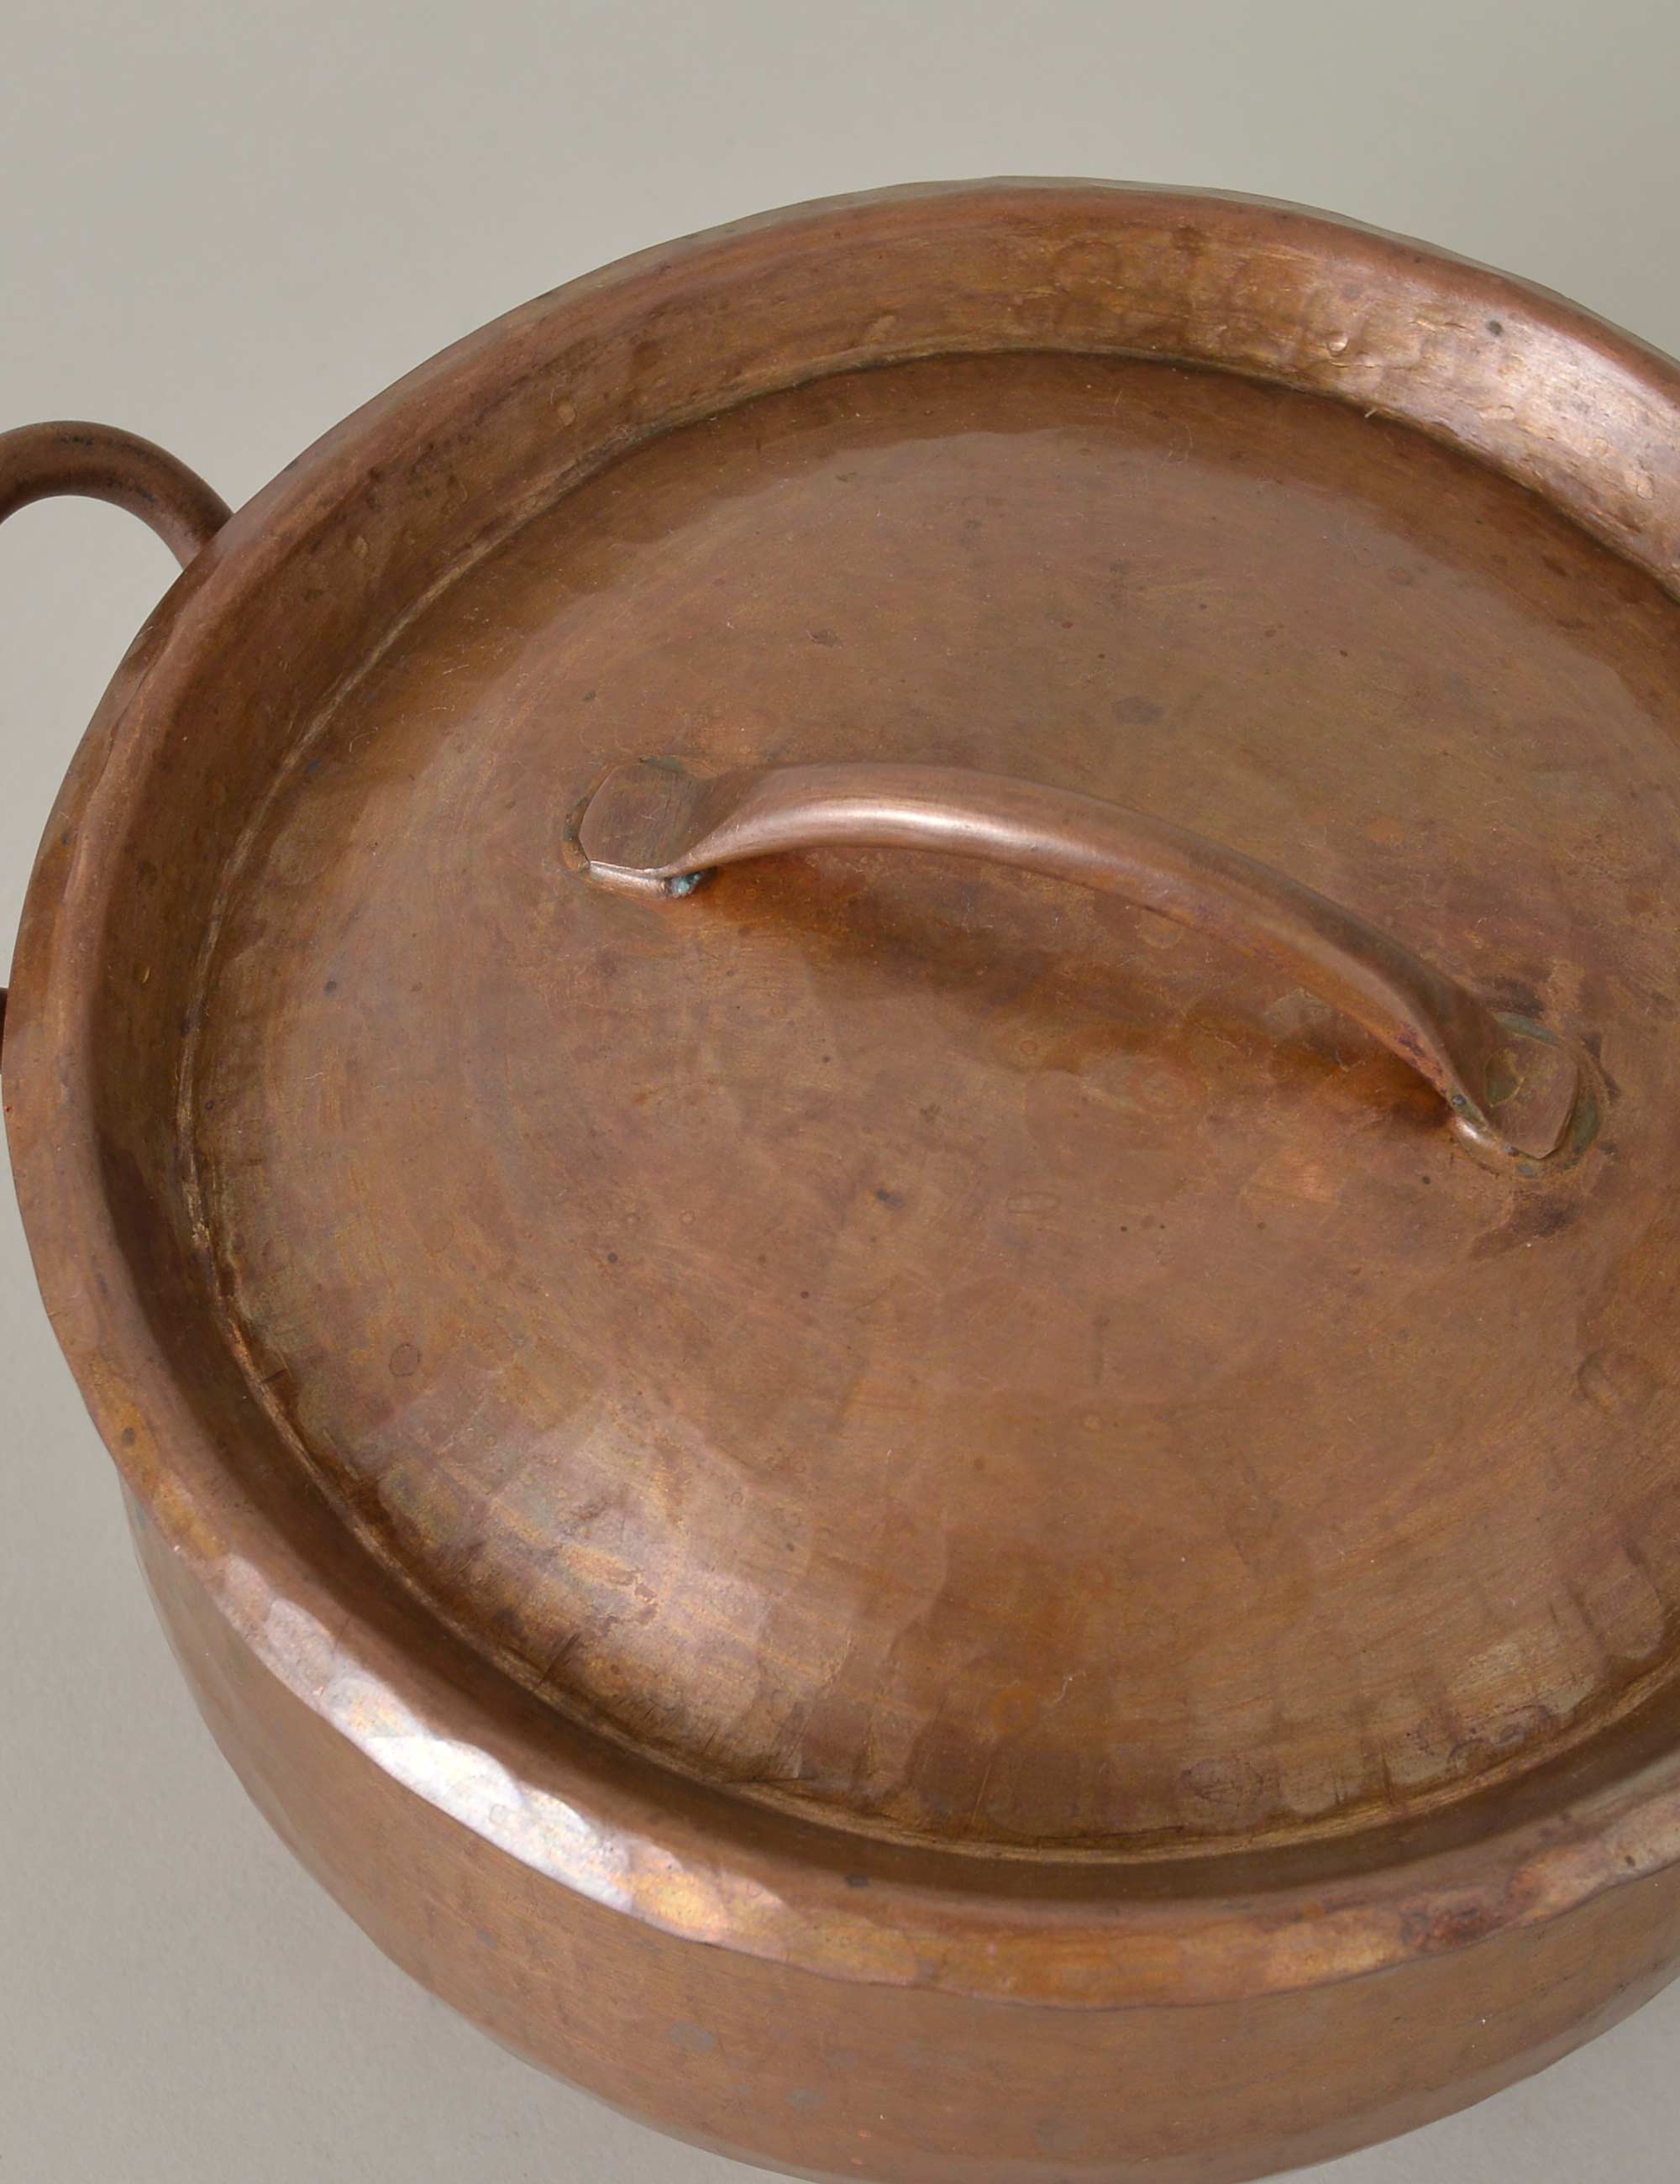 銅の両手鍋(小) / ババグーリ